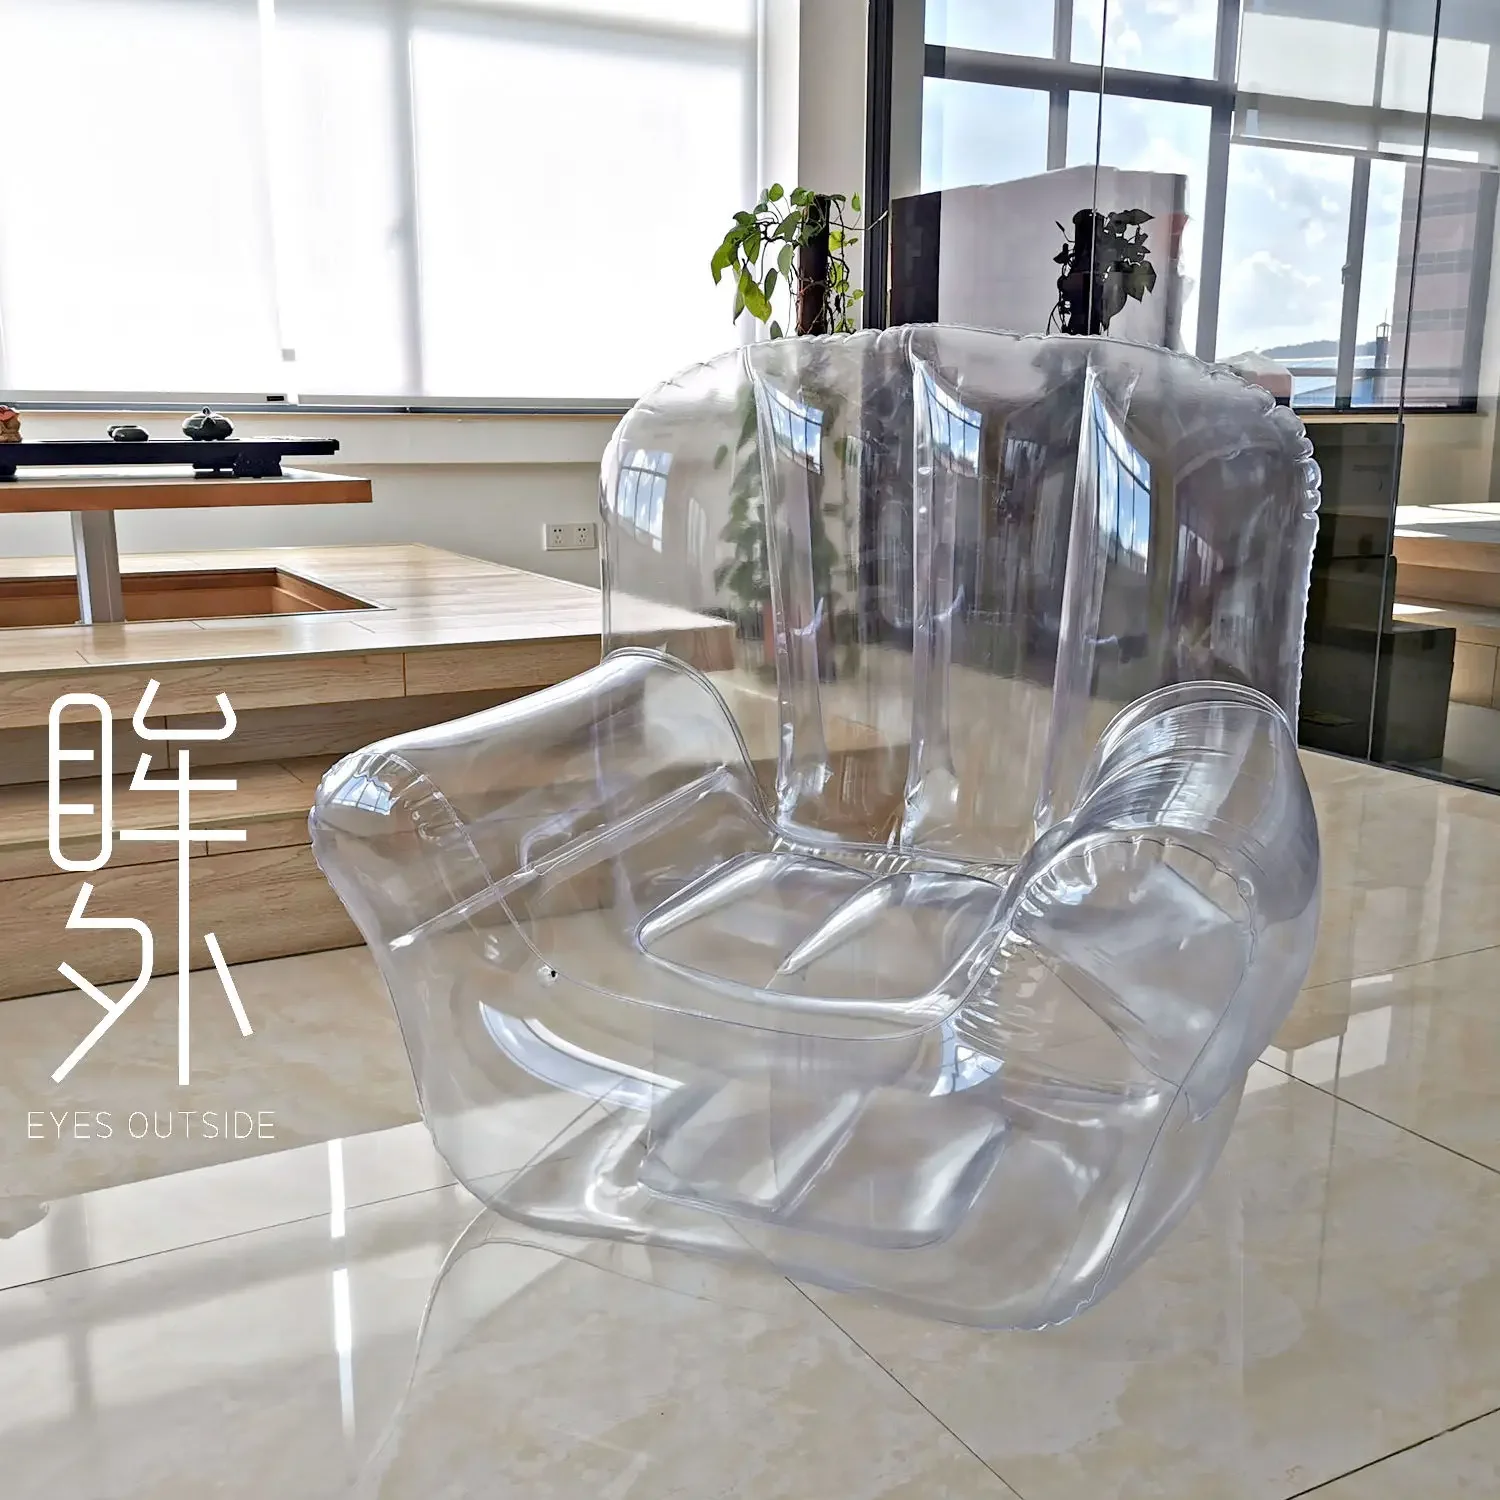 

Атмосферный прозрачный диван, креативный надувной ленивый стул для фотосъемки в помещении и на улице, реквизит «сделай сам» для хранения